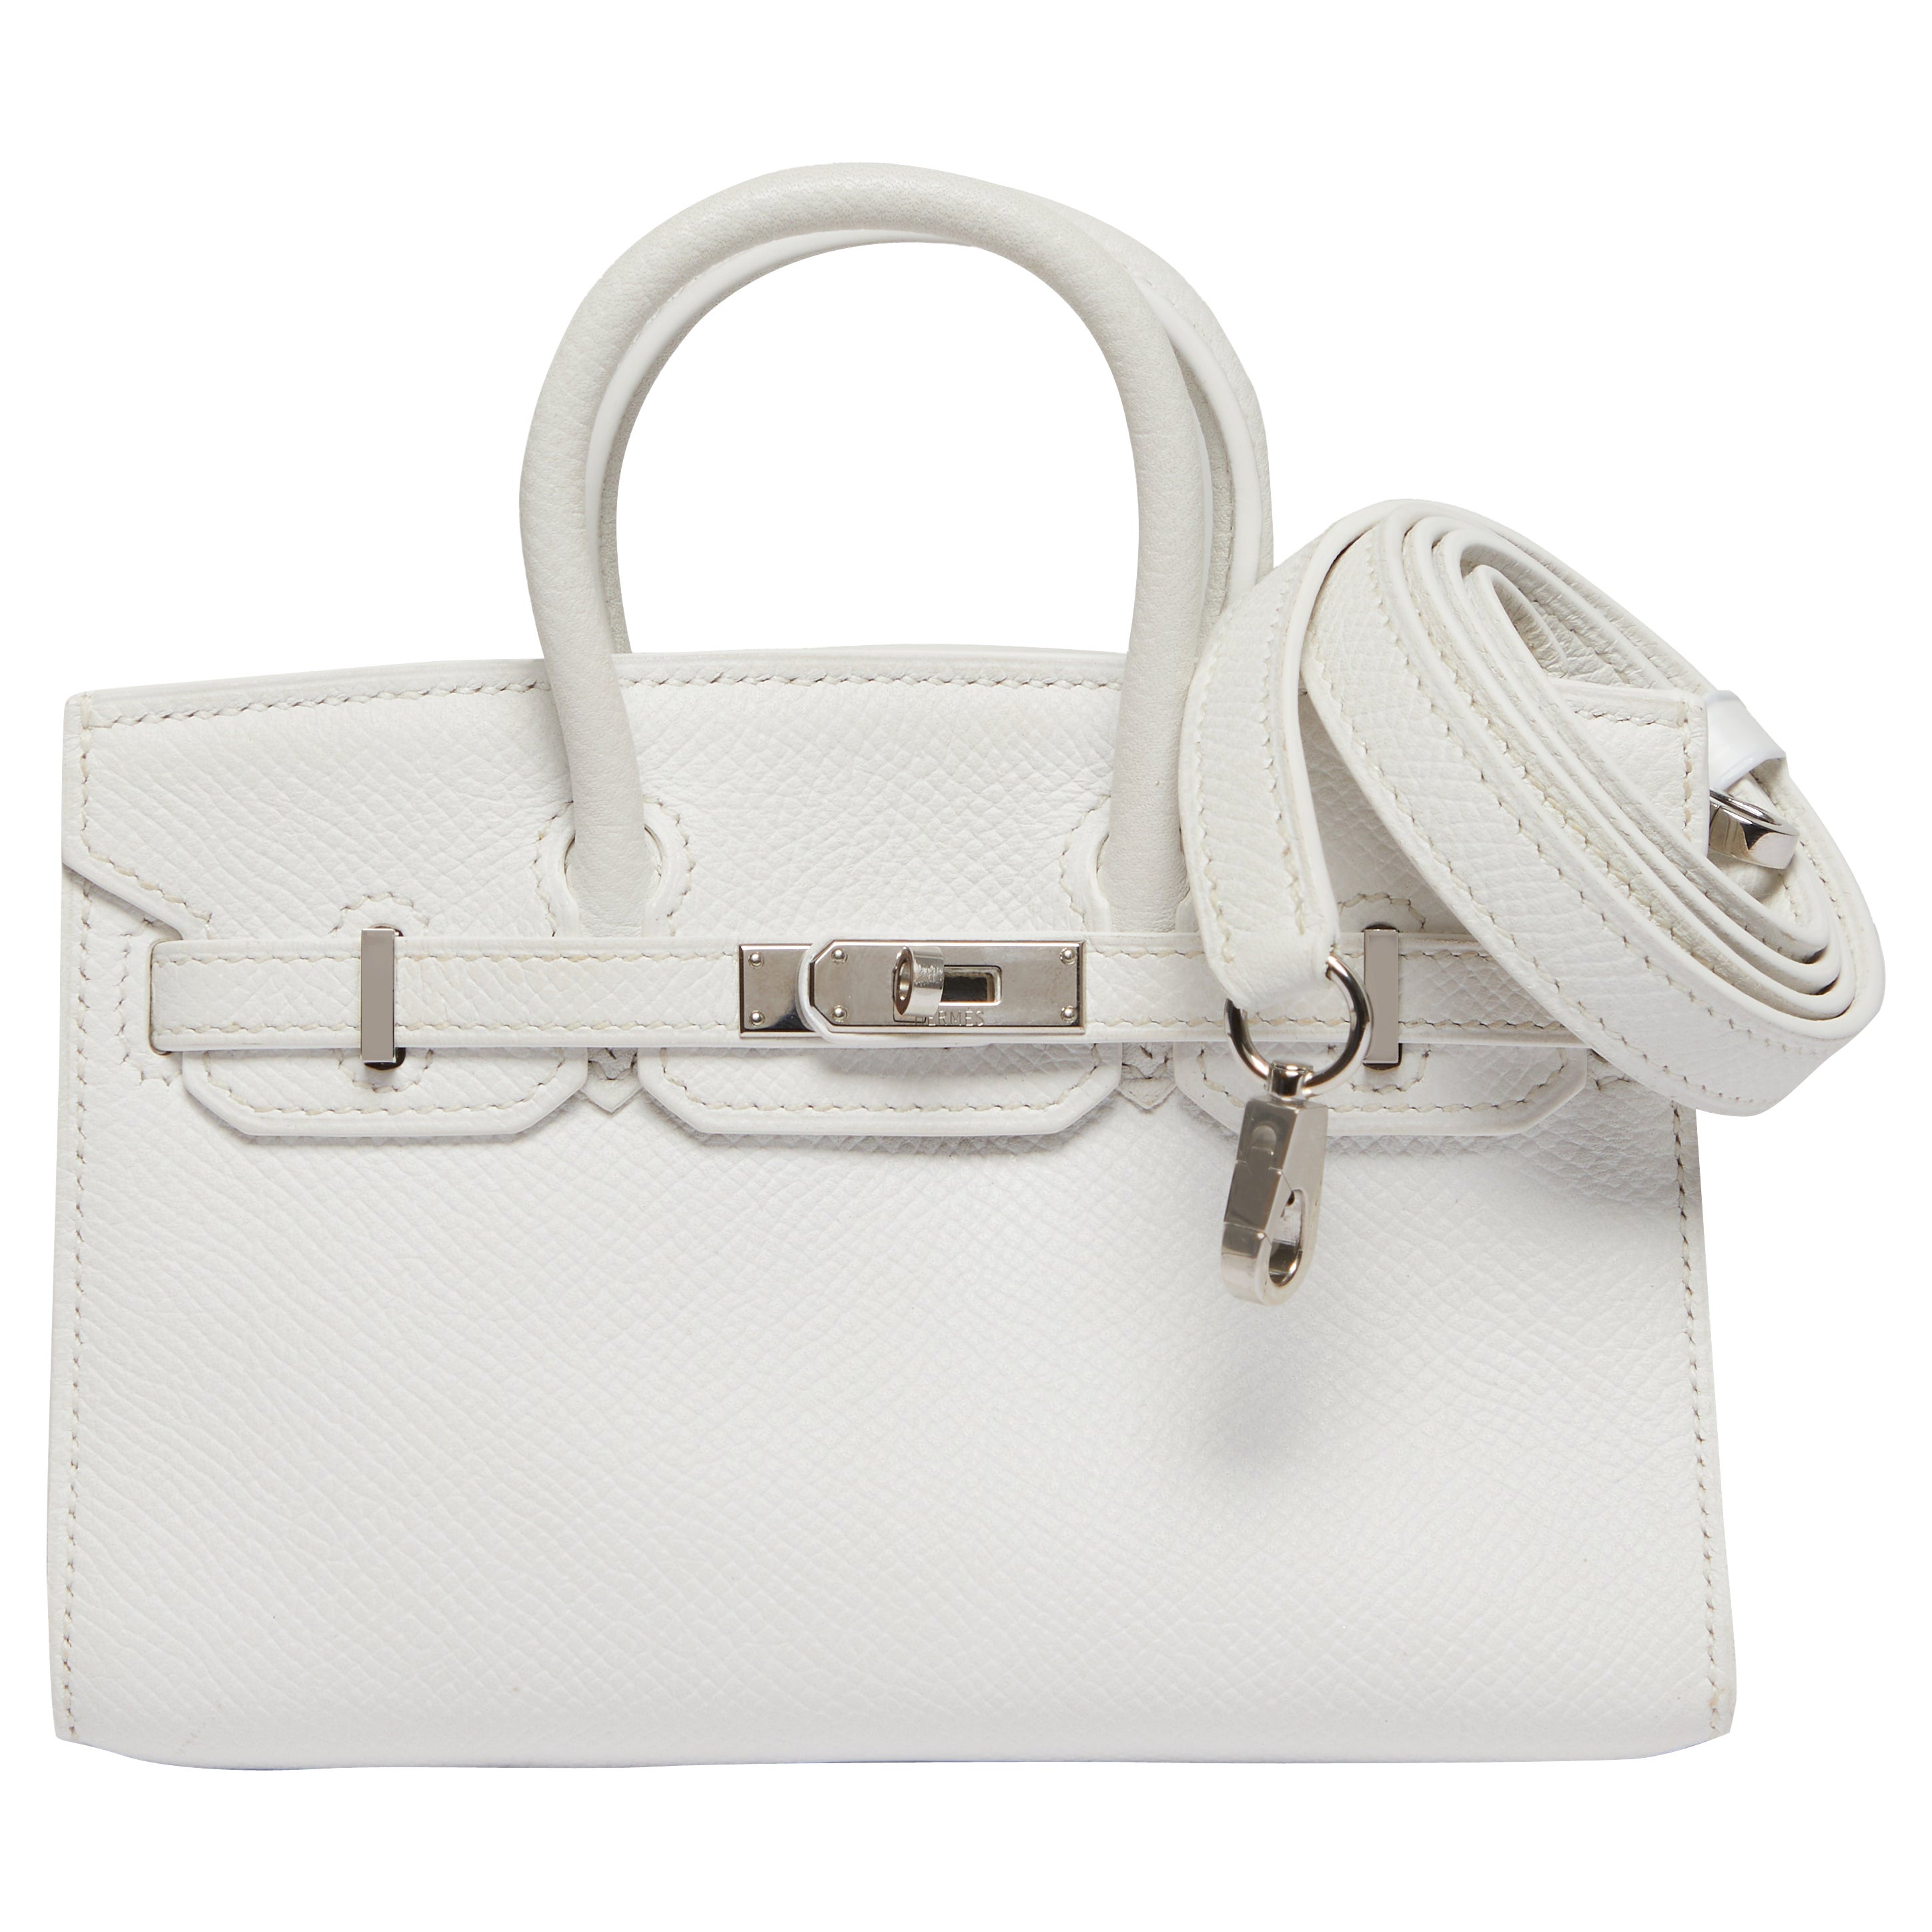 Hermès White Micro Birkin Handbag